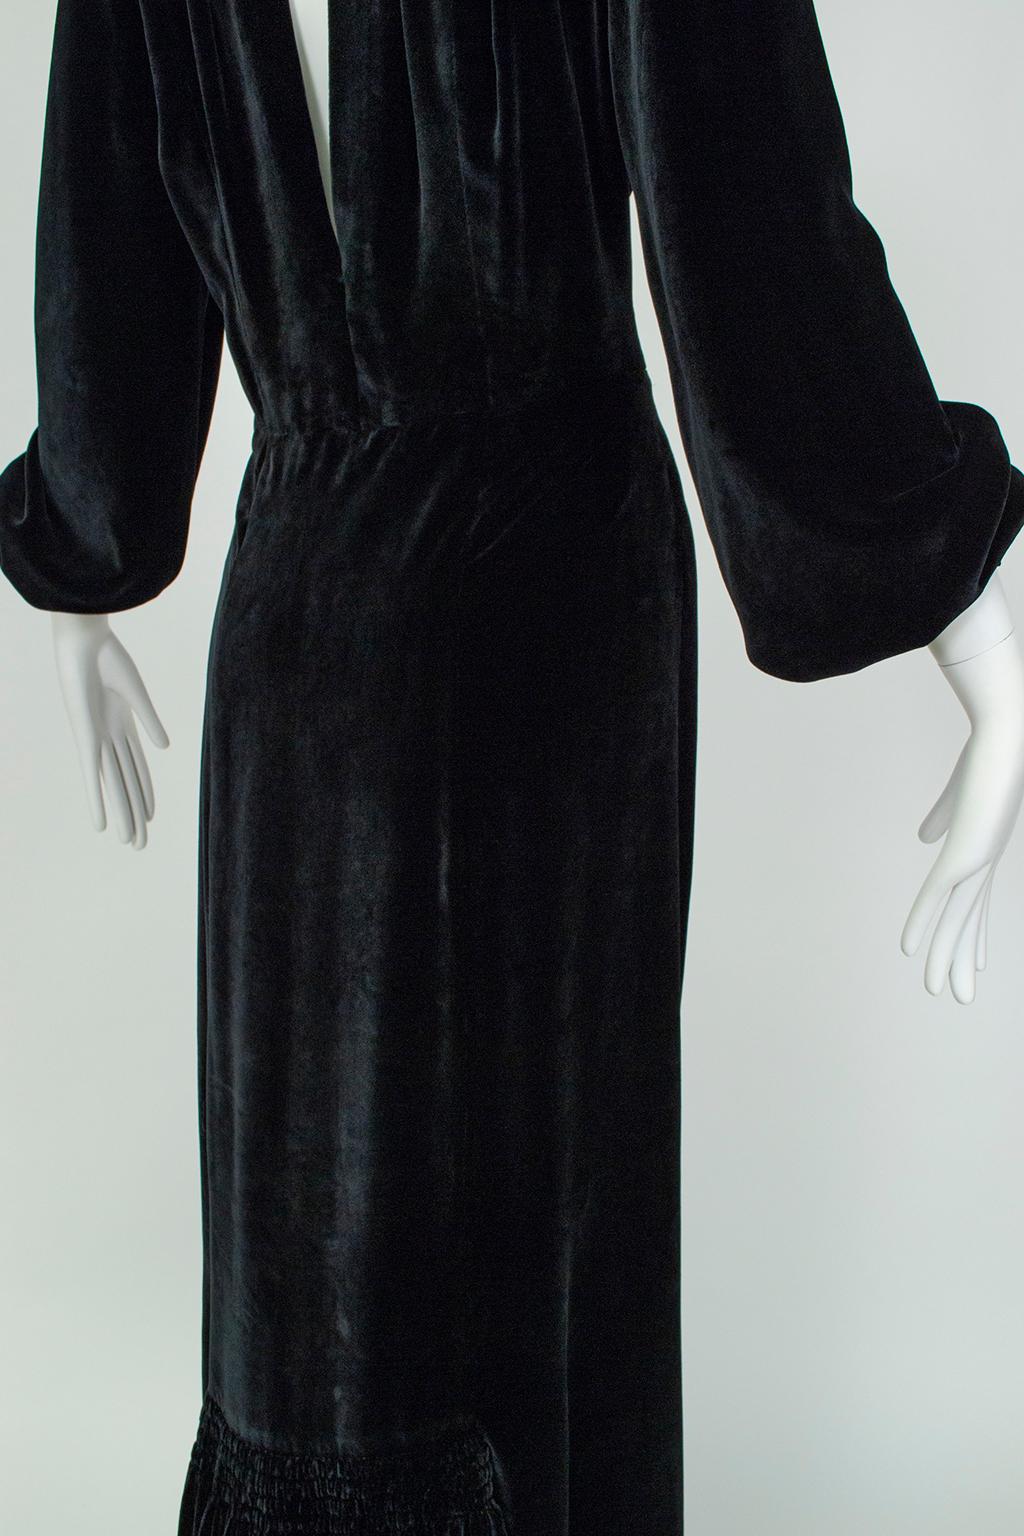 Aesthetic Open Back Black Velvet Ruff Gown w Train, Hearst Castle - M-L, 1930s For Sale 6